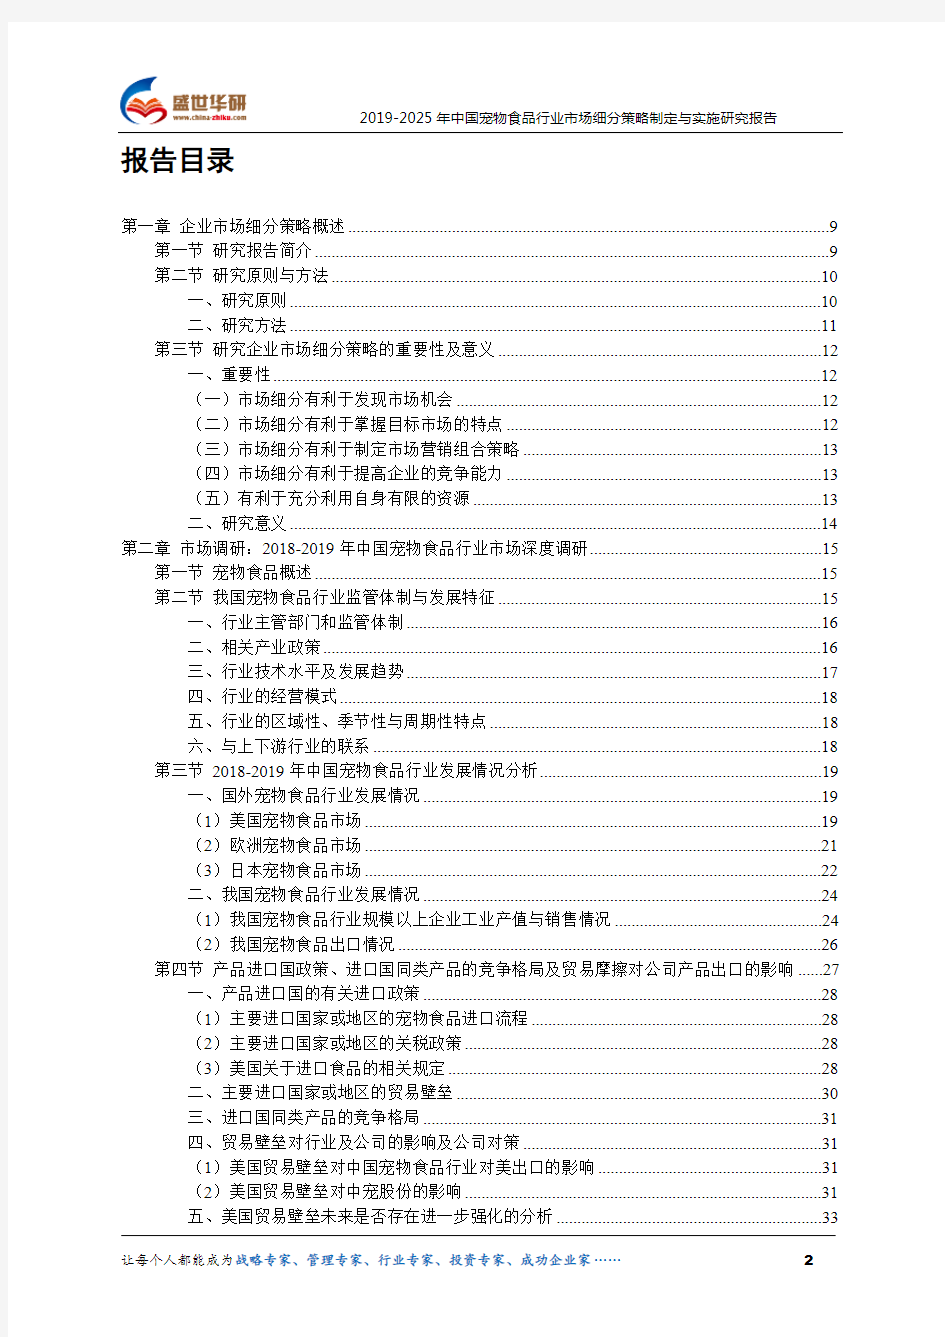 【完整版】2019-2025年中国宠物食品行业市场细分策略制定与实施研究报告